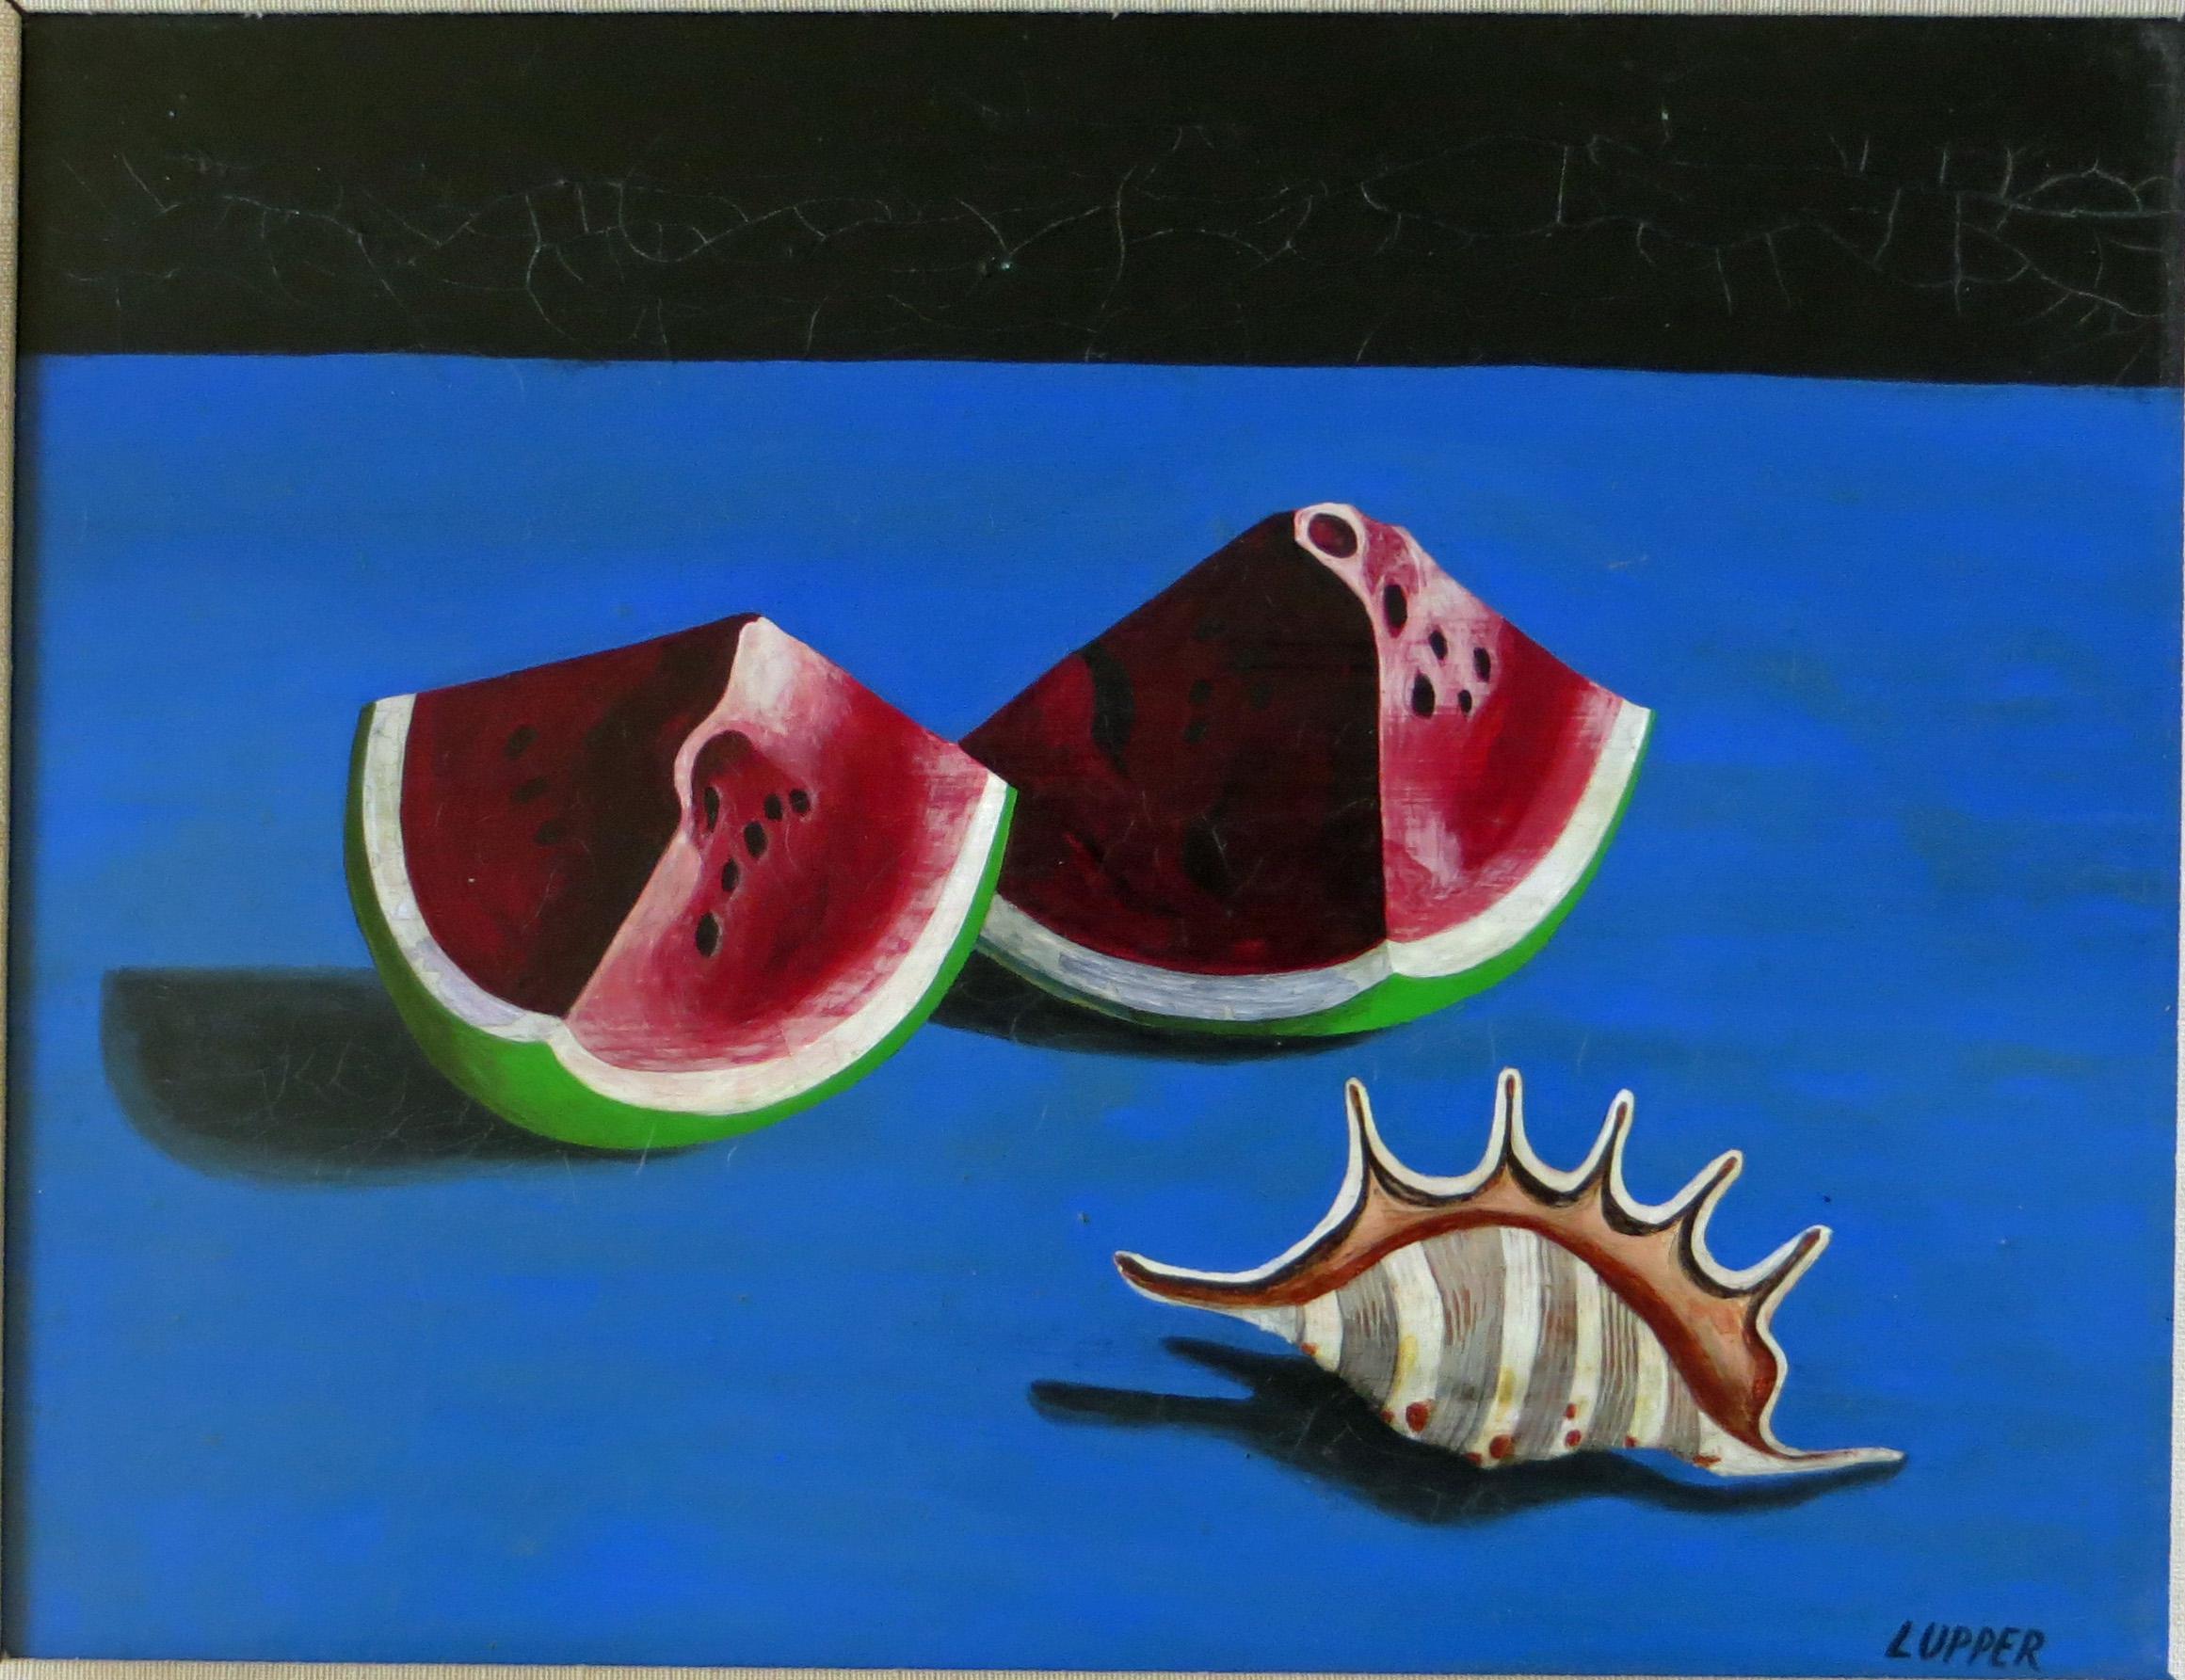 Rote Melonenscheibe - surrealistische Malerei (Surrealismus), Painting, von Edward Lupper